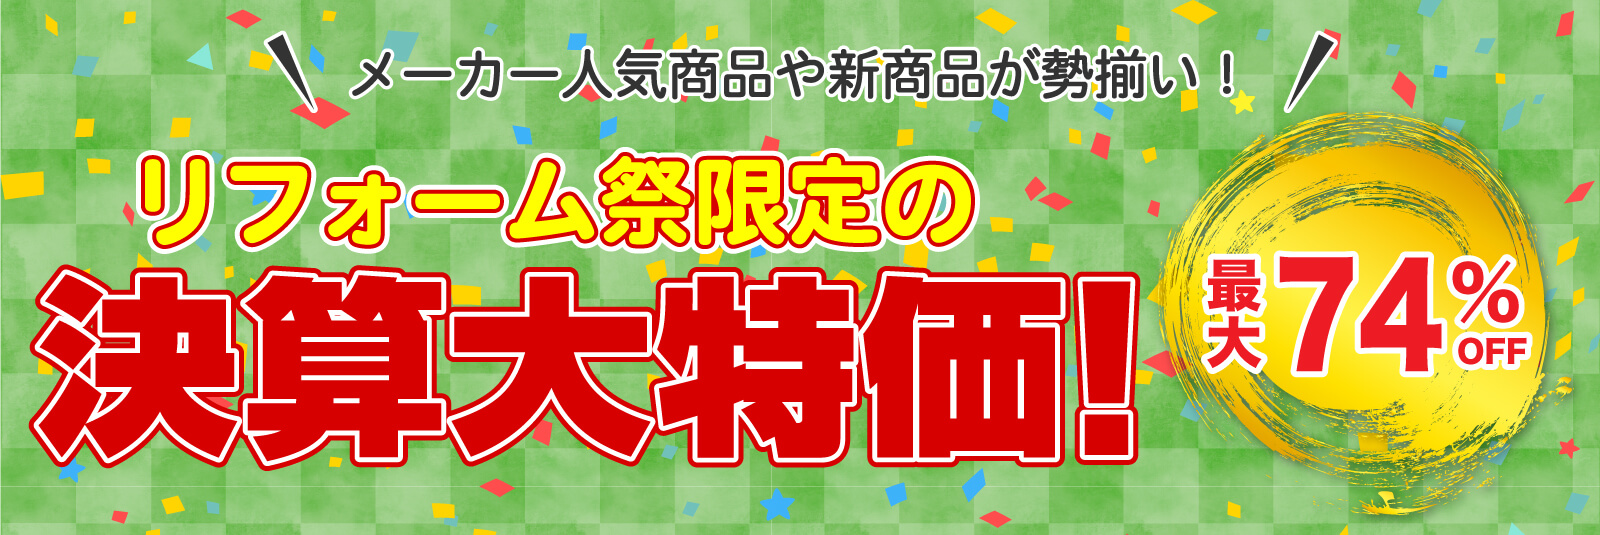 仙台のリフォーム専門店 DAIKUダイク リフォーム祭限定 決算大特価